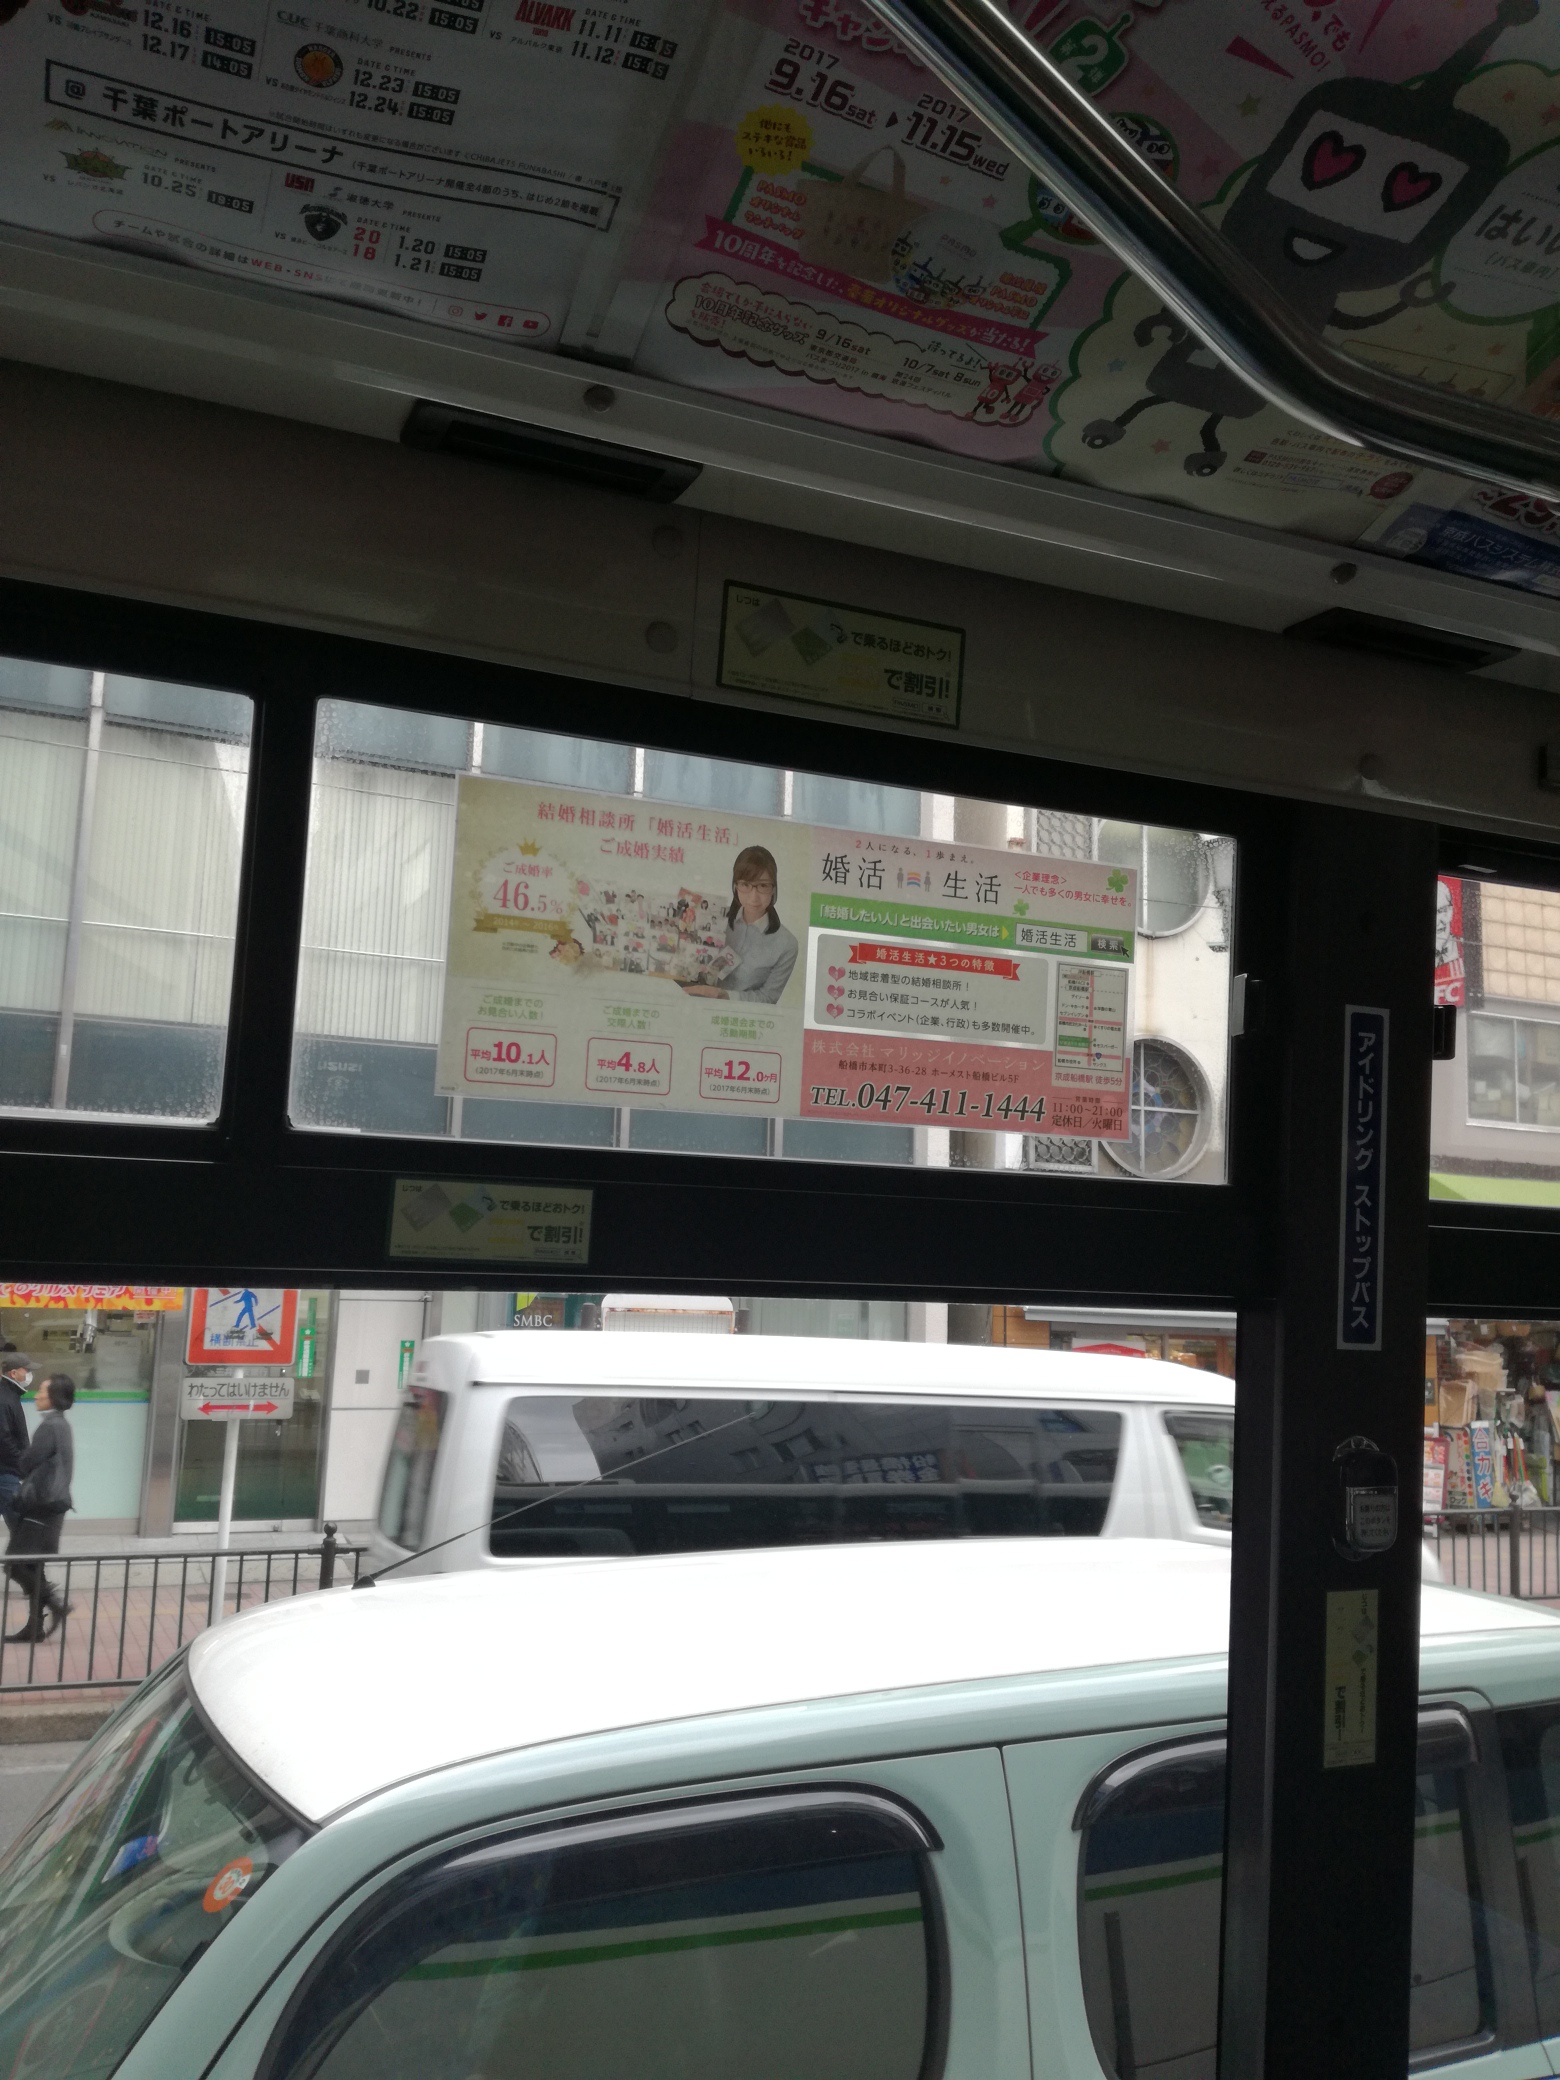 京成バスシステム窓広告A